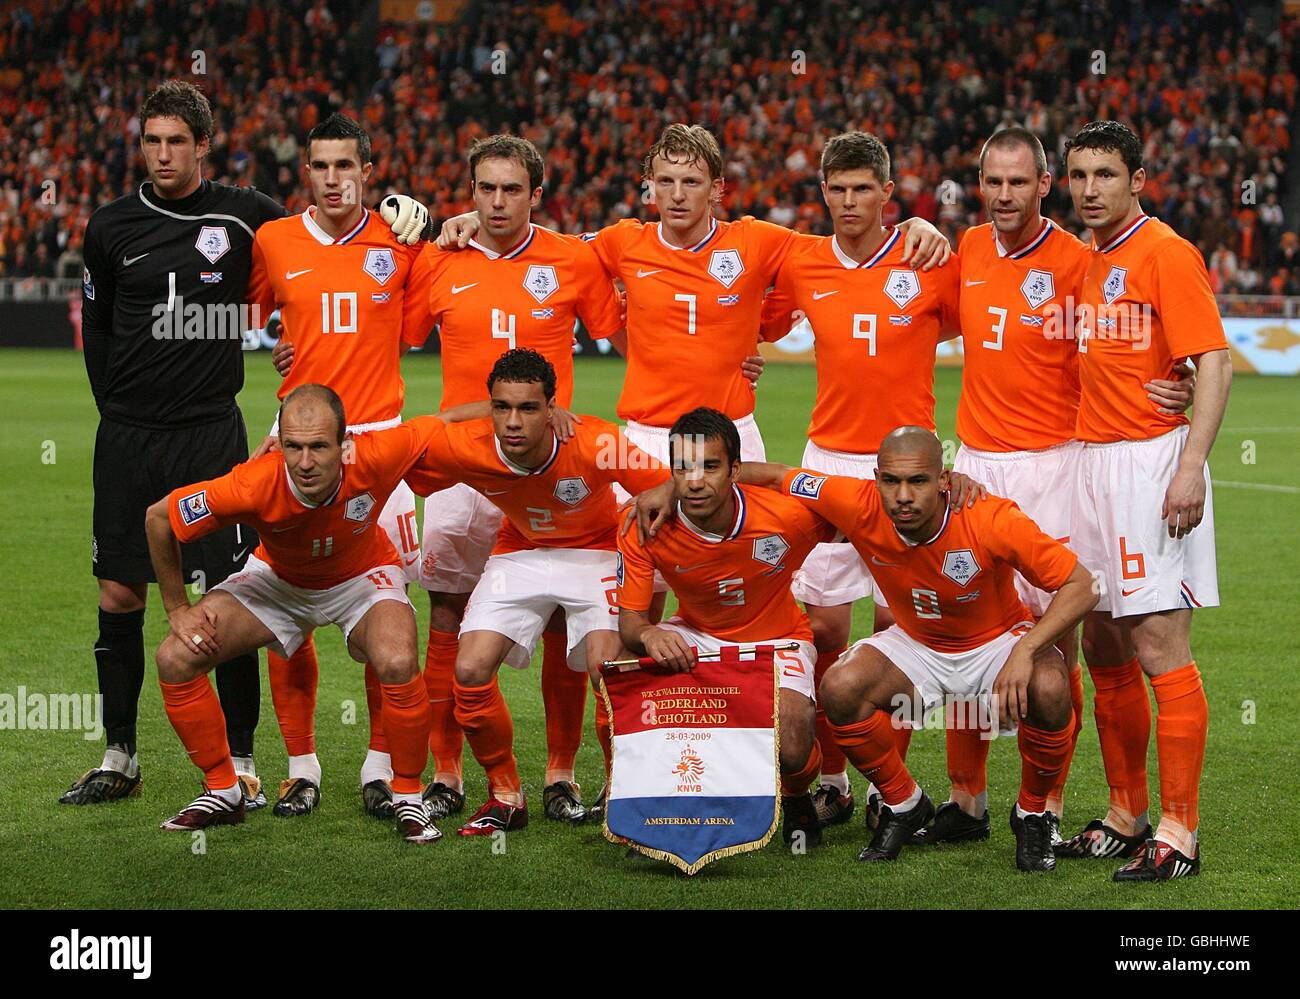 Fußball - FIFA Fußball-Weltmeisterschaft 2010 - Qualifikationsrunde - Gruppe neun - Holland gegen Schottland - Amsterdam Arena. Das Holland Team posiert vor dem Anpfiff für ein Gruppenfoto Stockfoto